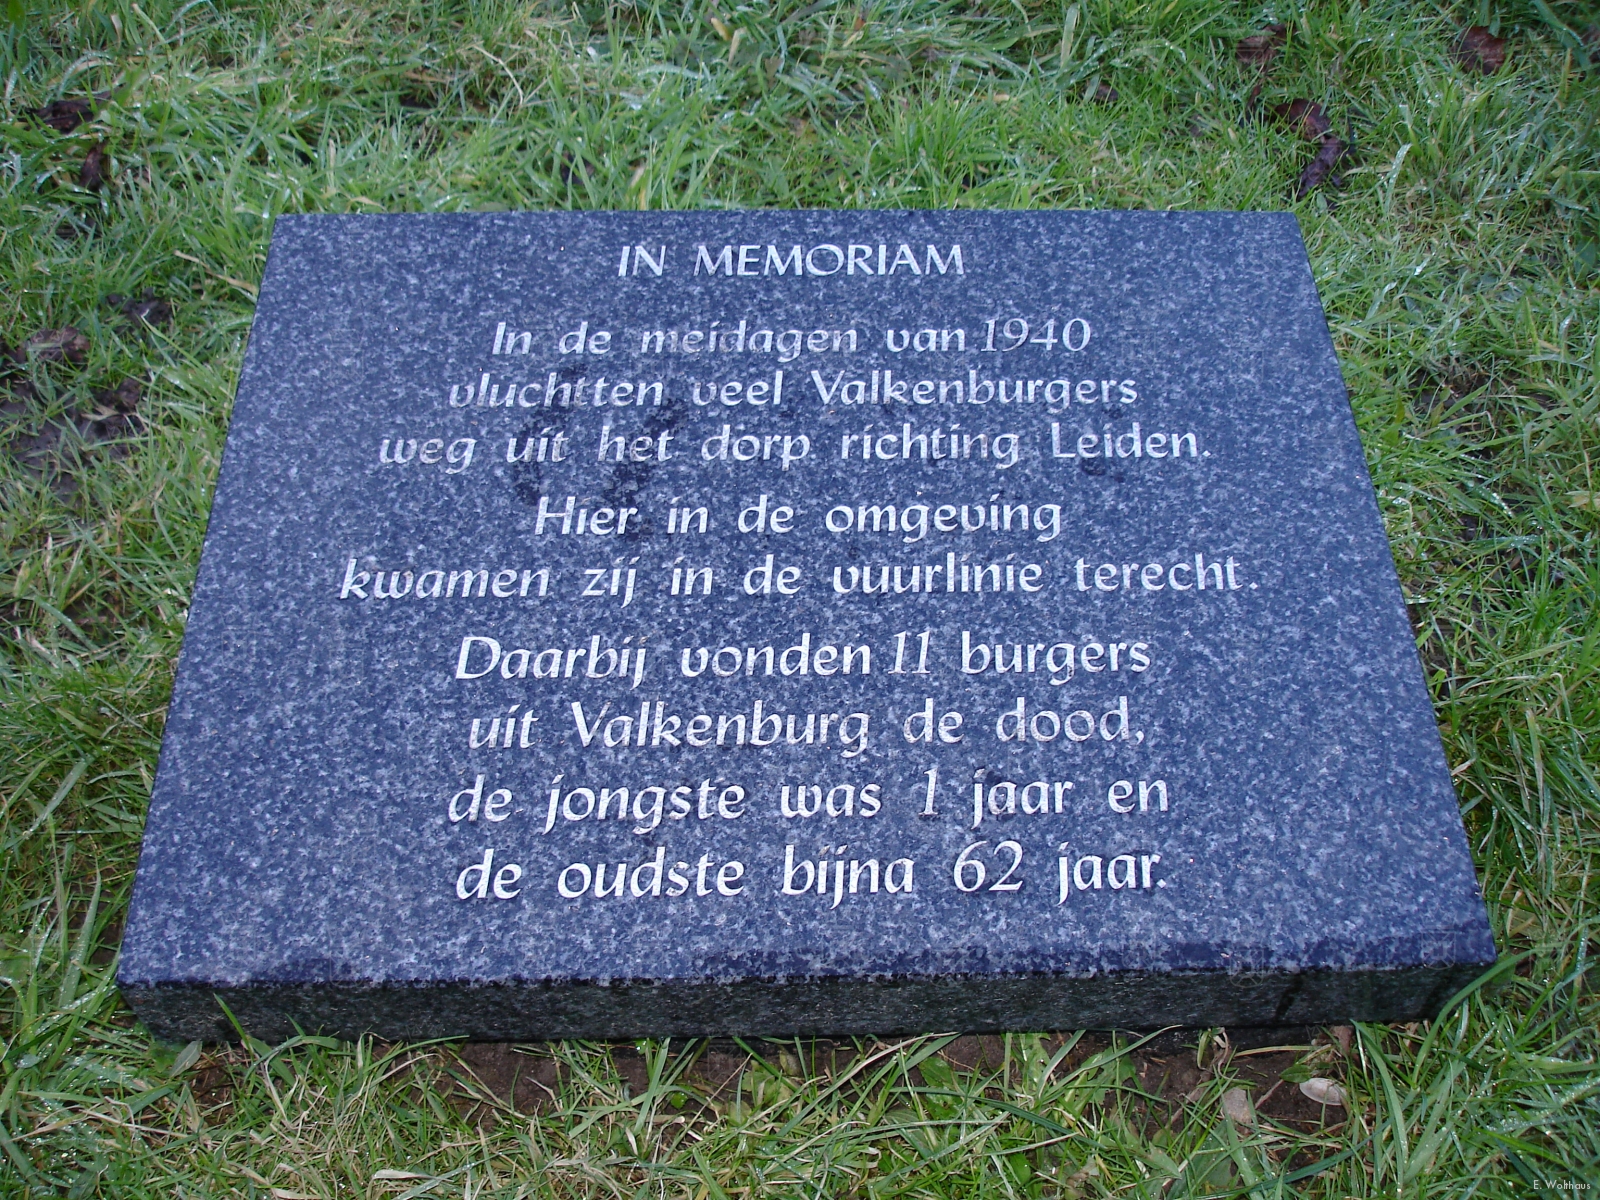 De gedenksteen ter nagedachtenis aan de elf Valkenburgers die sneuvelden tijdens hun vlu.cht naar de Haagsche Schouw op 11 Mei 1940